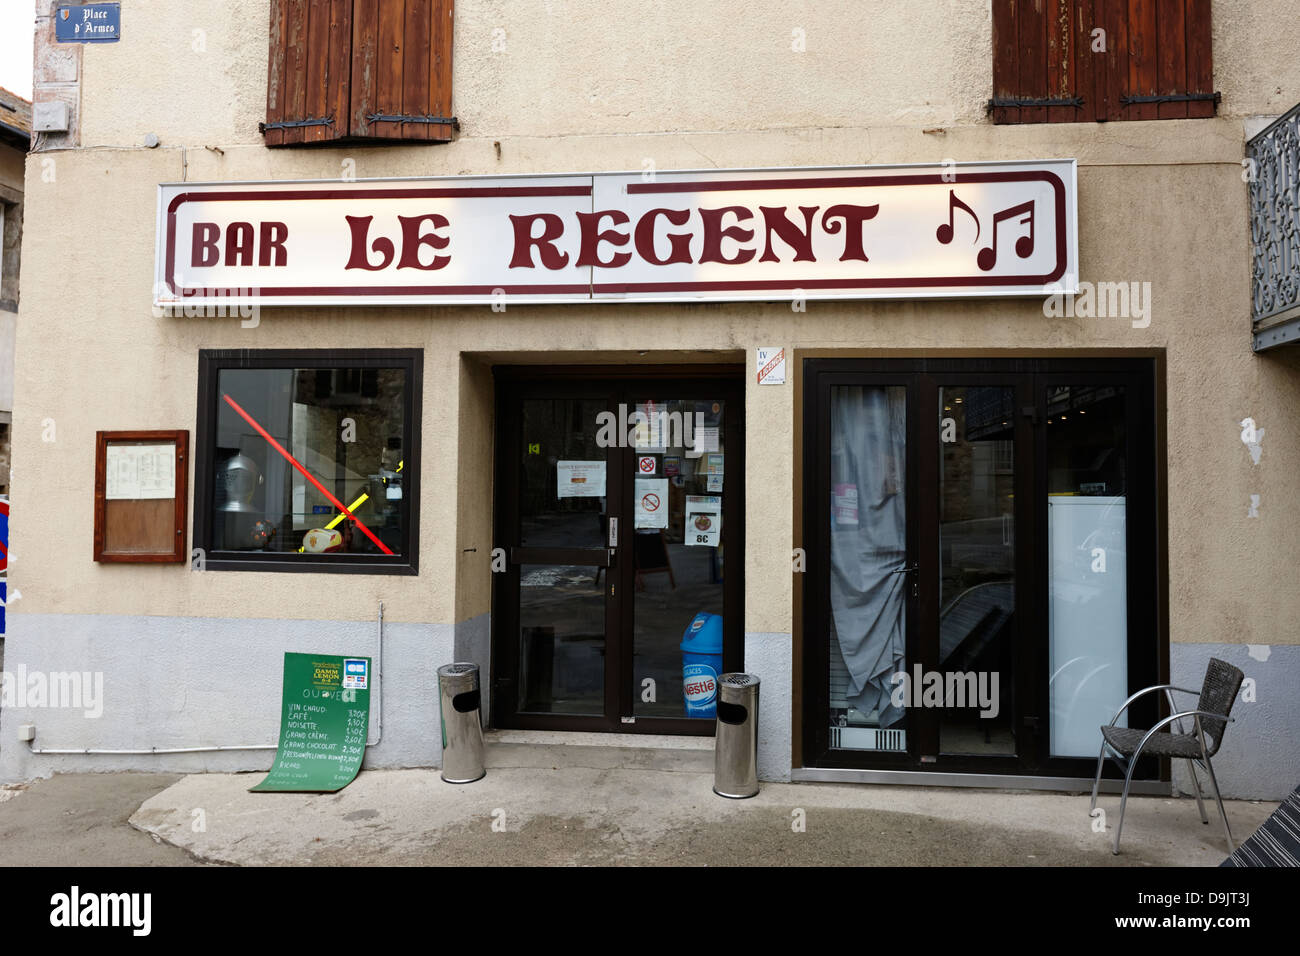 Piccolo locale cafe bar nella città vecchia di mont-louis pyrenees-orientales francia Foto Stock